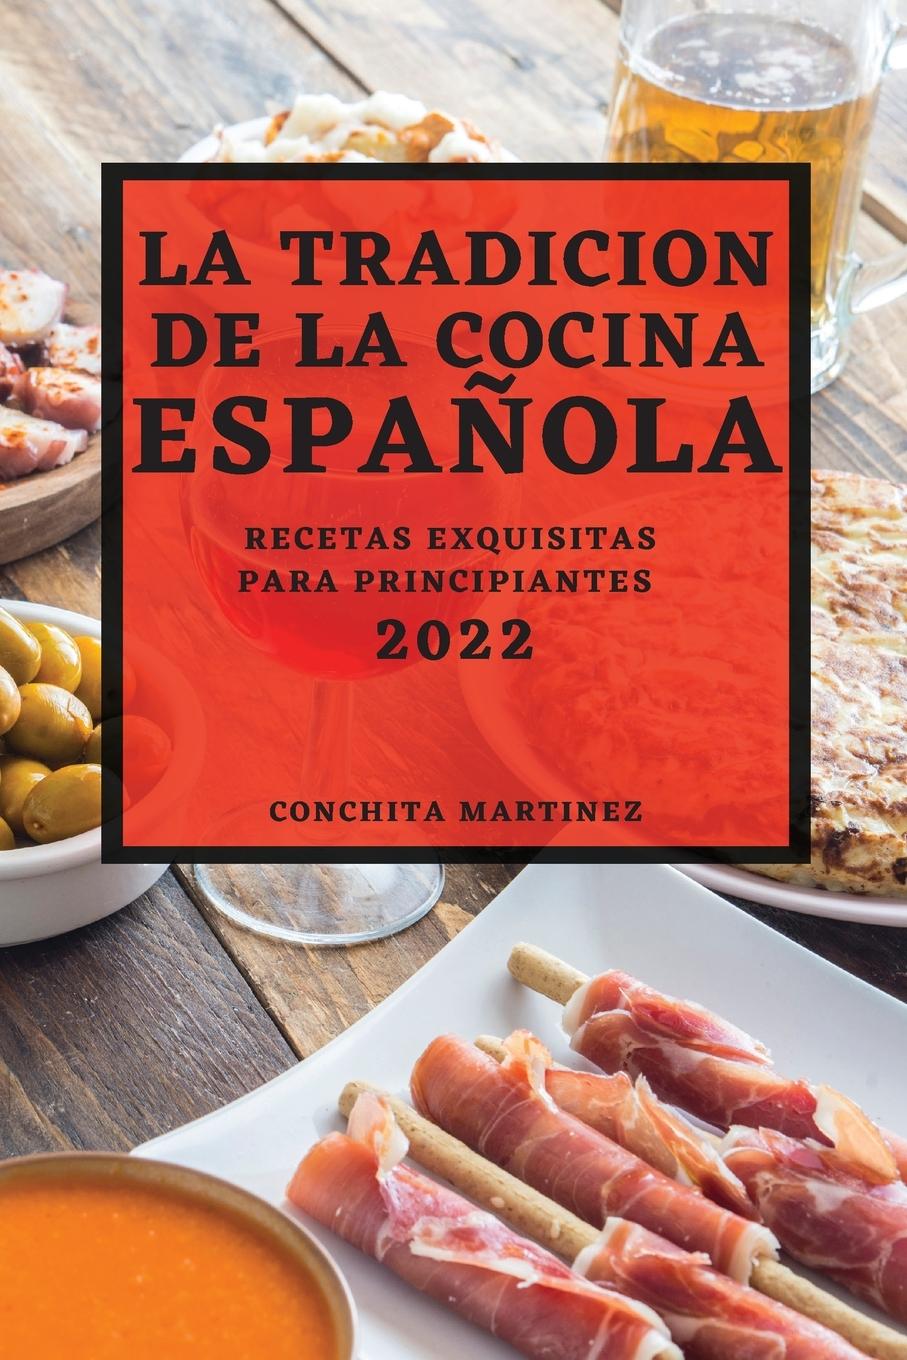 Book Tradicion de la Cocina Espanola 2022 